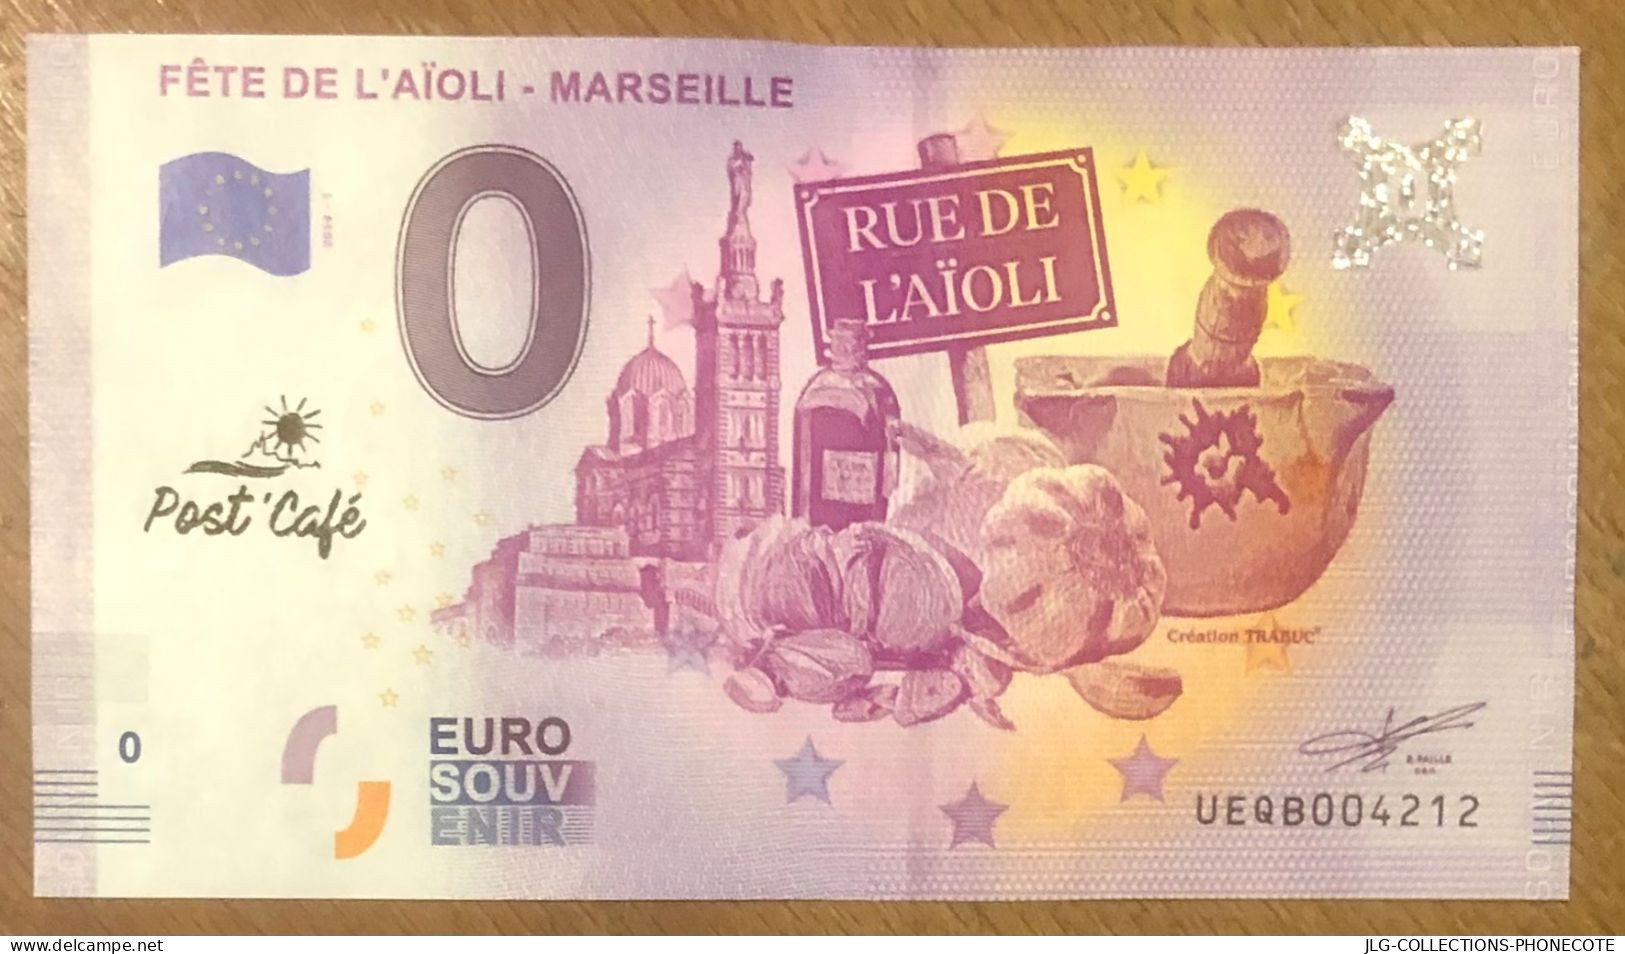 2019 MARSEILLE FÊTE DE L'AÏOLI & TAMPON POST CAFÉ BILLET 0 EURO SOUVENIR 0 EURO SCHEIN BANKNOTE PAPER MONEY BILLETE - Essais Privés / Non-officiels